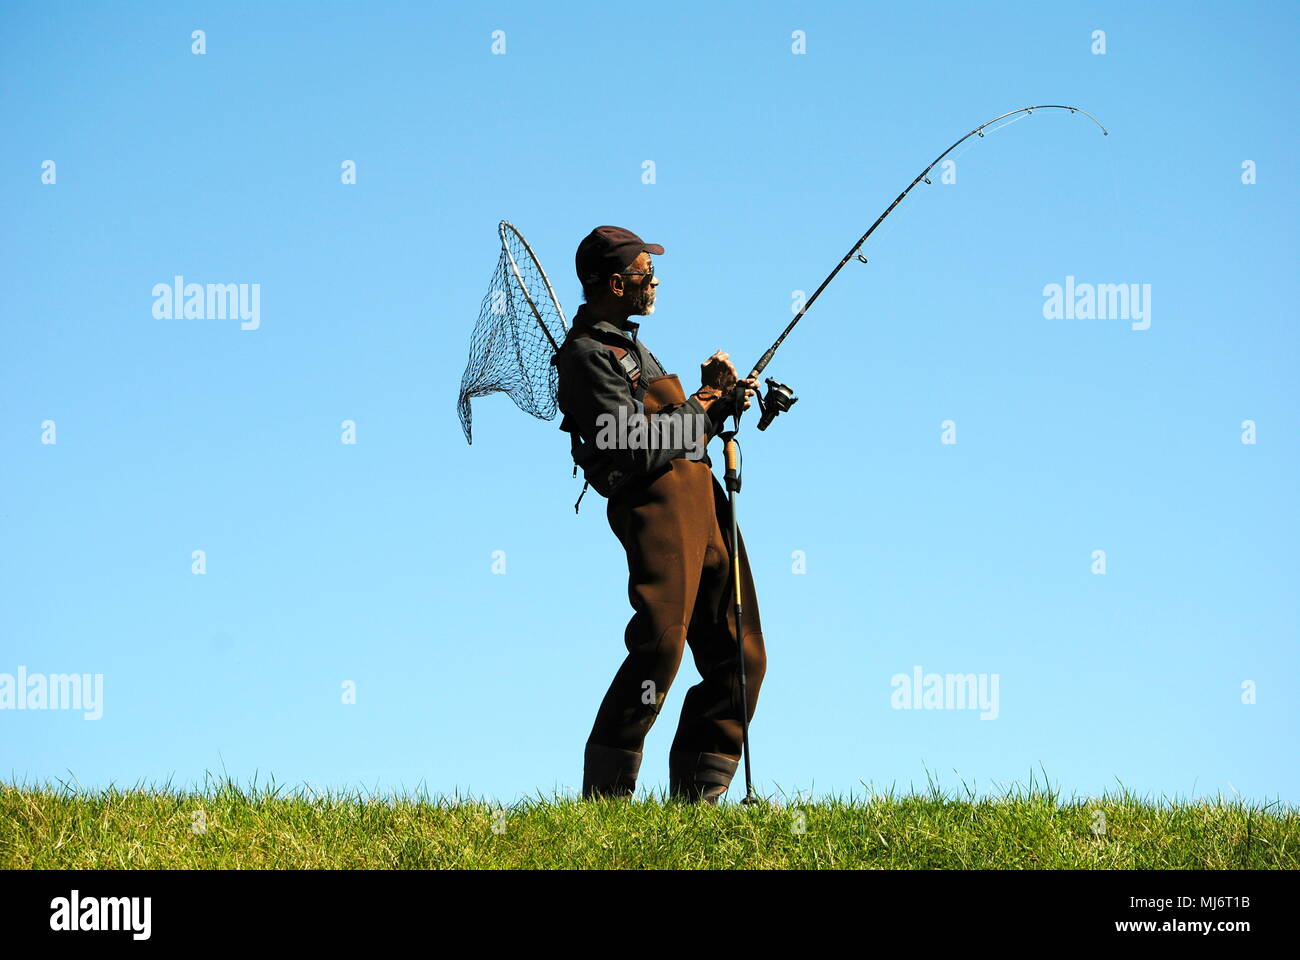 Pescatore, gli stili PER IL PUBBLICO, IN PIENA MARCIA. Foto Stock